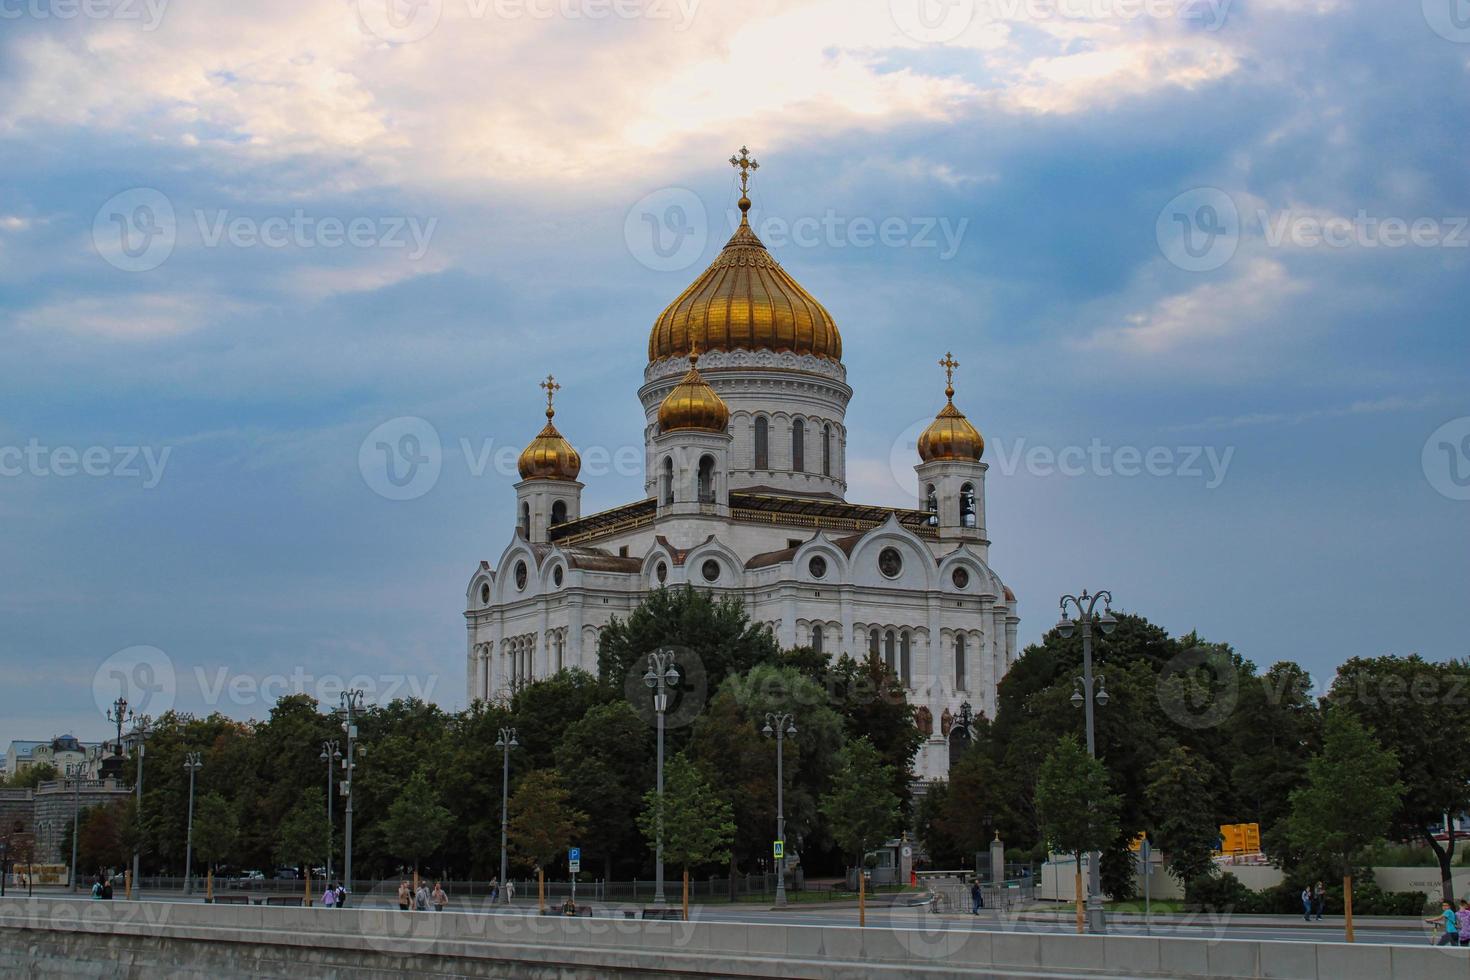 Cattedrale di Cristo Salvatore a Mosca foto